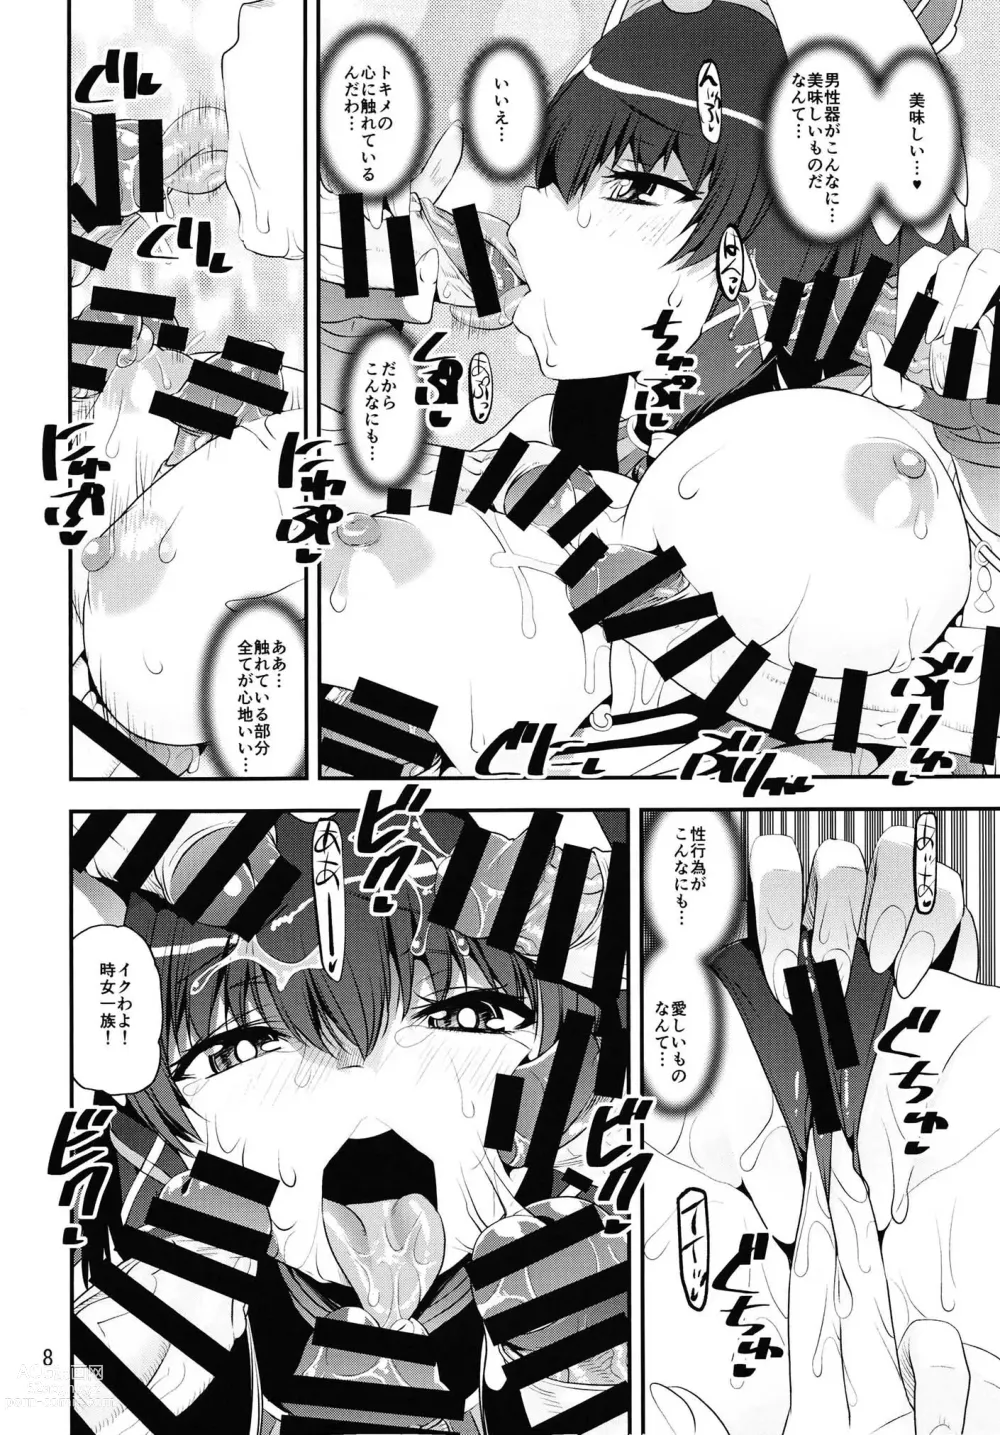 Page 7 of doujinshi Tokime vs Meto Les Battle Royale